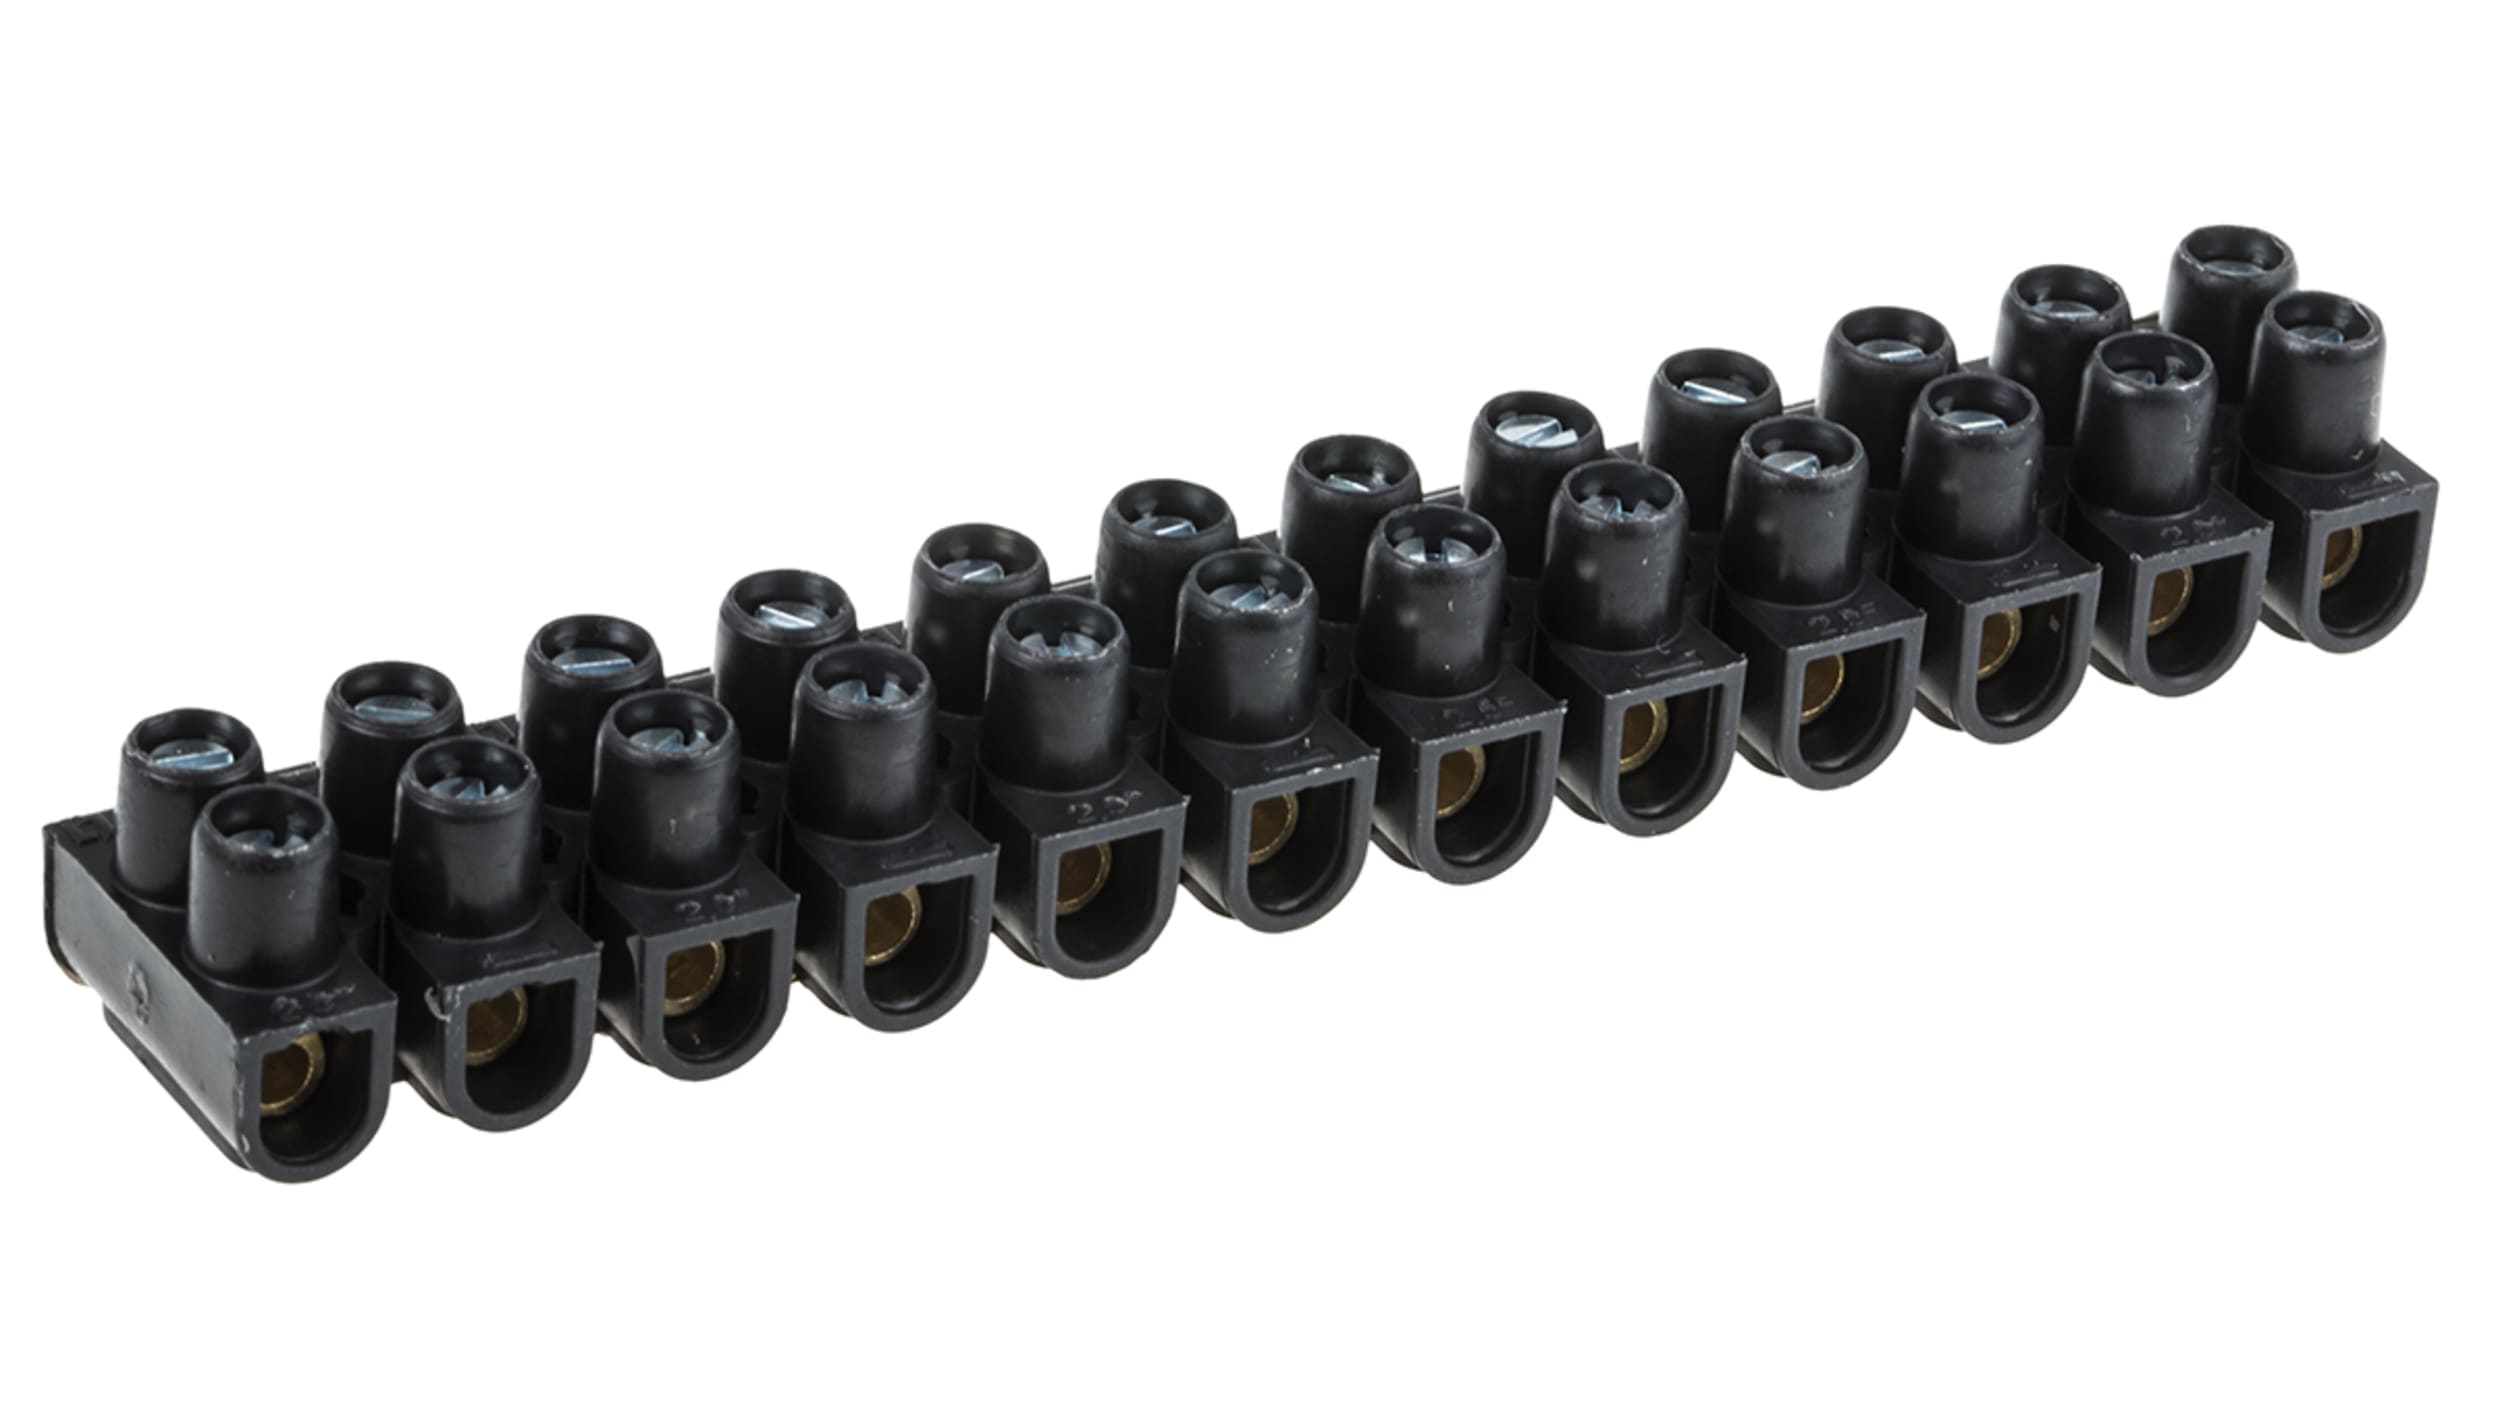 Regleta de conexiones RS PRO de 12 vías, para cable de 2.5 mm², 24A, 400 V,  Tornillo, de color Negro